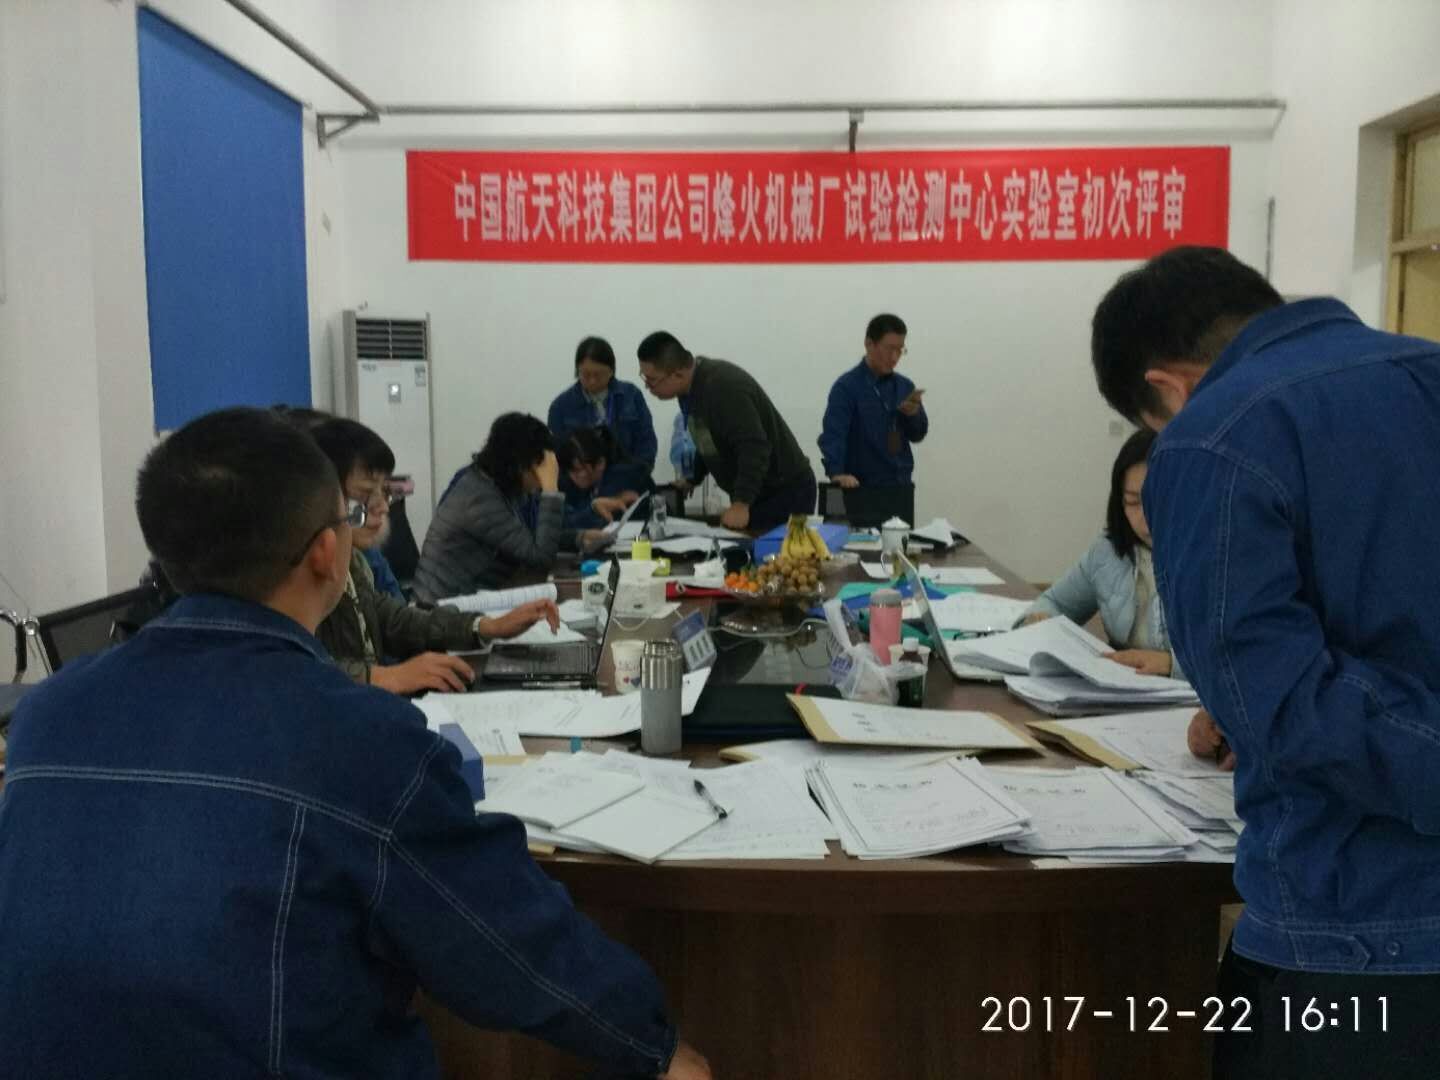 中国航天科技集团公司烽火机械厂试